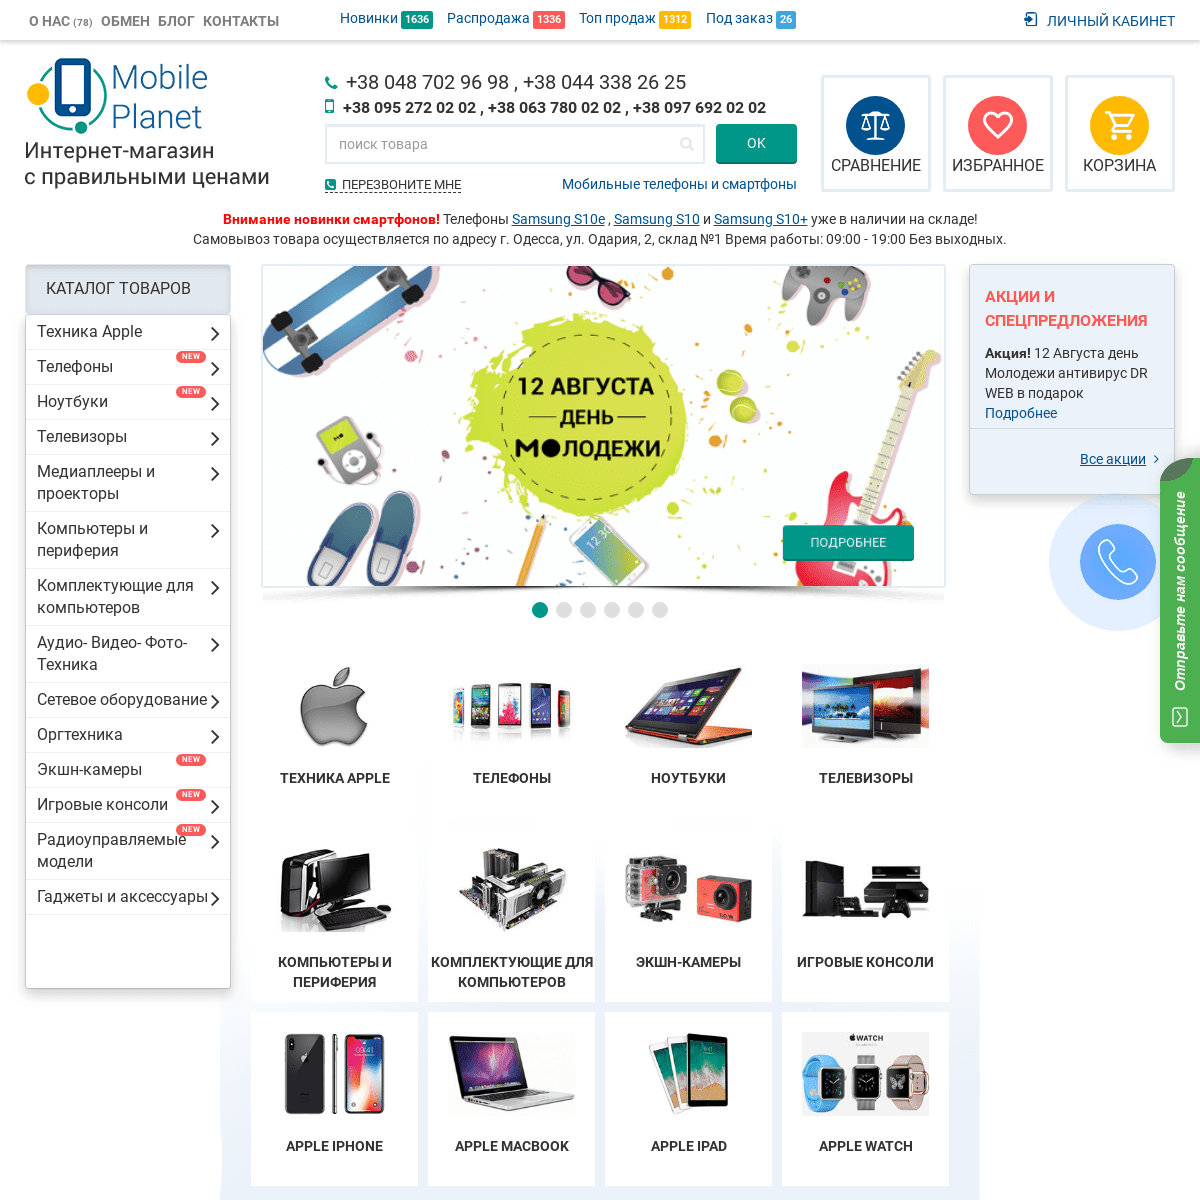 Интернет-магазин электроники в Украине Одесса Киев Mobileplanet.ua